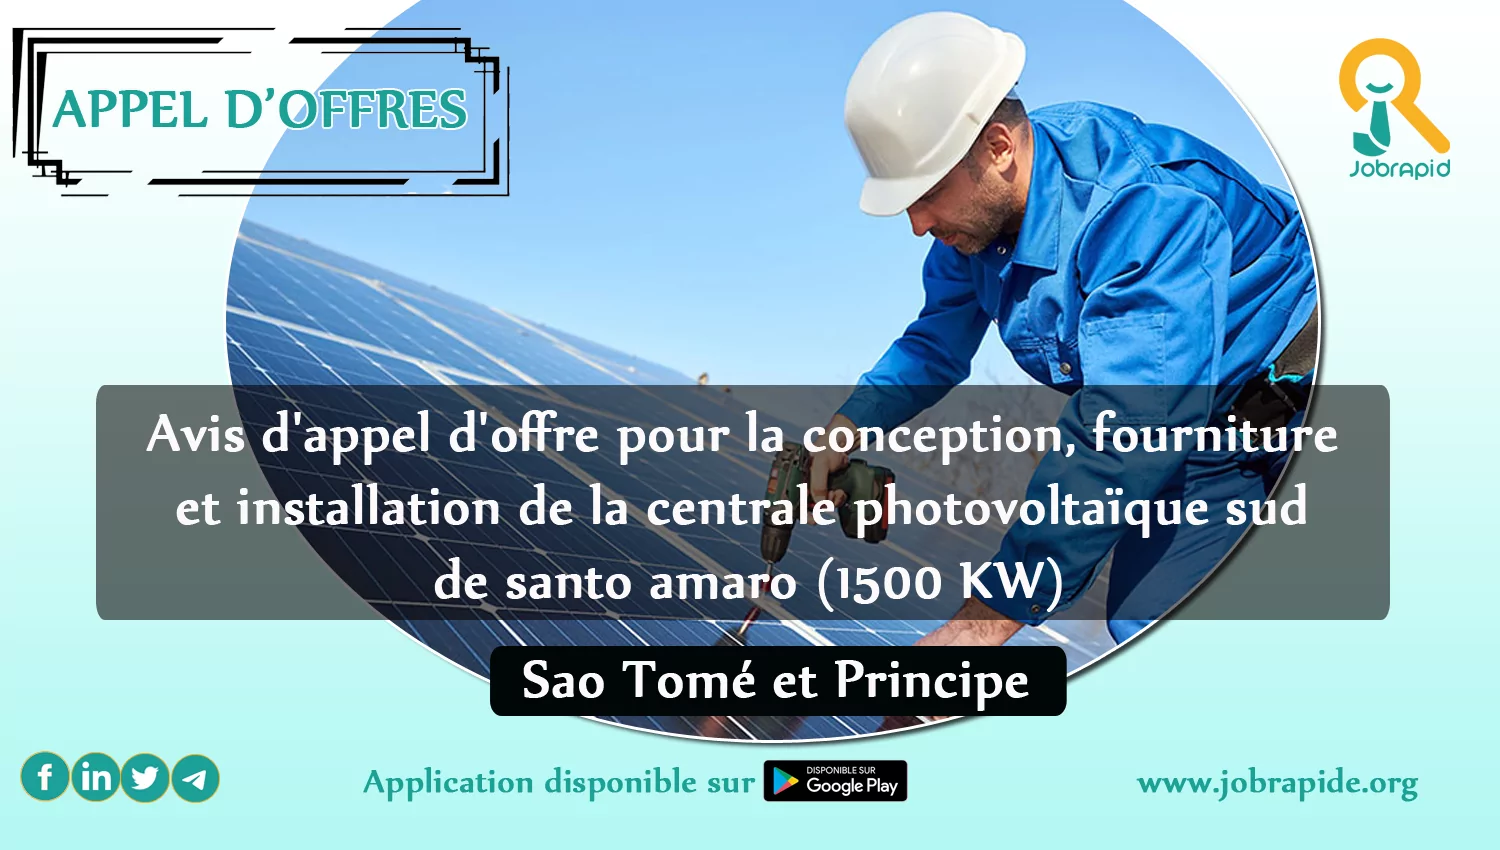 Avis d’appel d’offre pour la conception, fourniture et installation de la centrale photovoltaïque sud de santo amaro (1500 KW), Sao Tomé et Principe